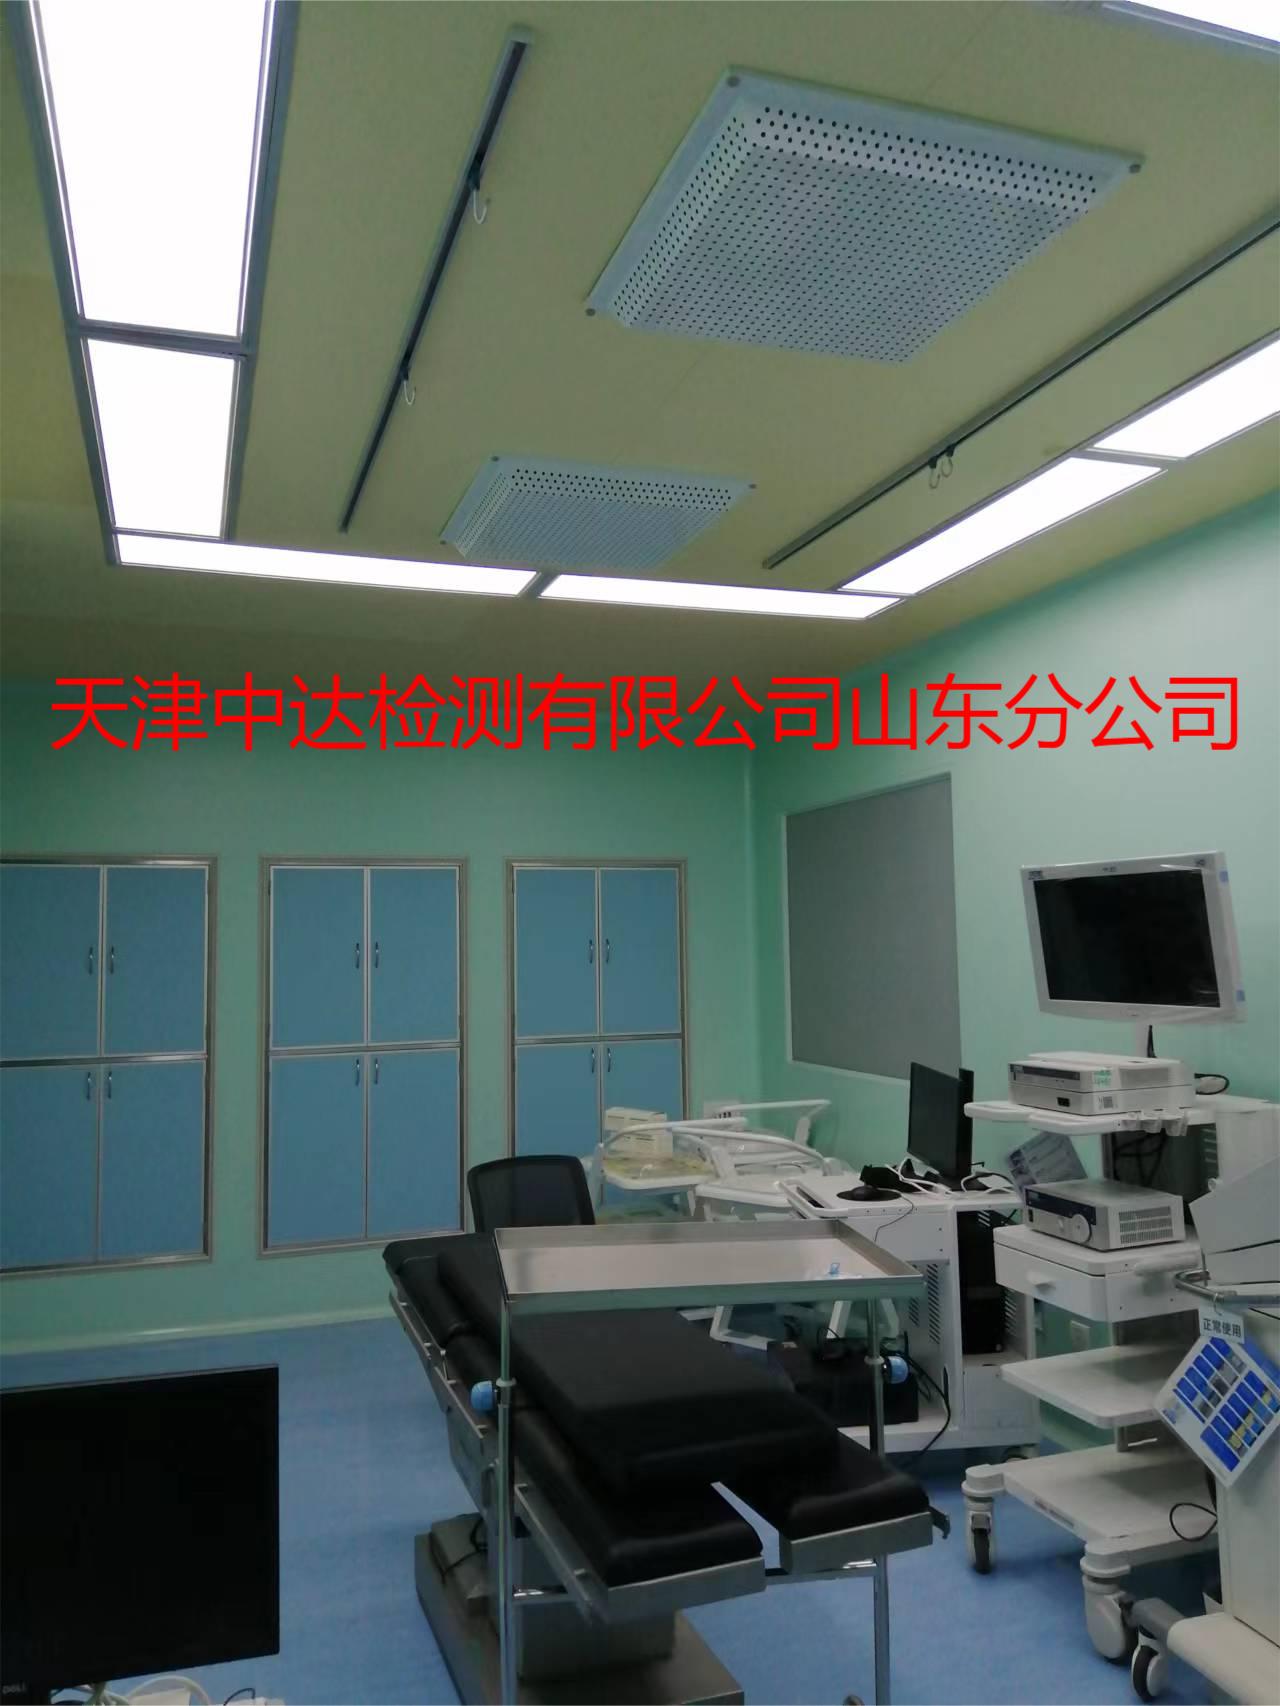 山东省淄博市医院手术室洁净检测第三方机构--天津中达检测山东分公司